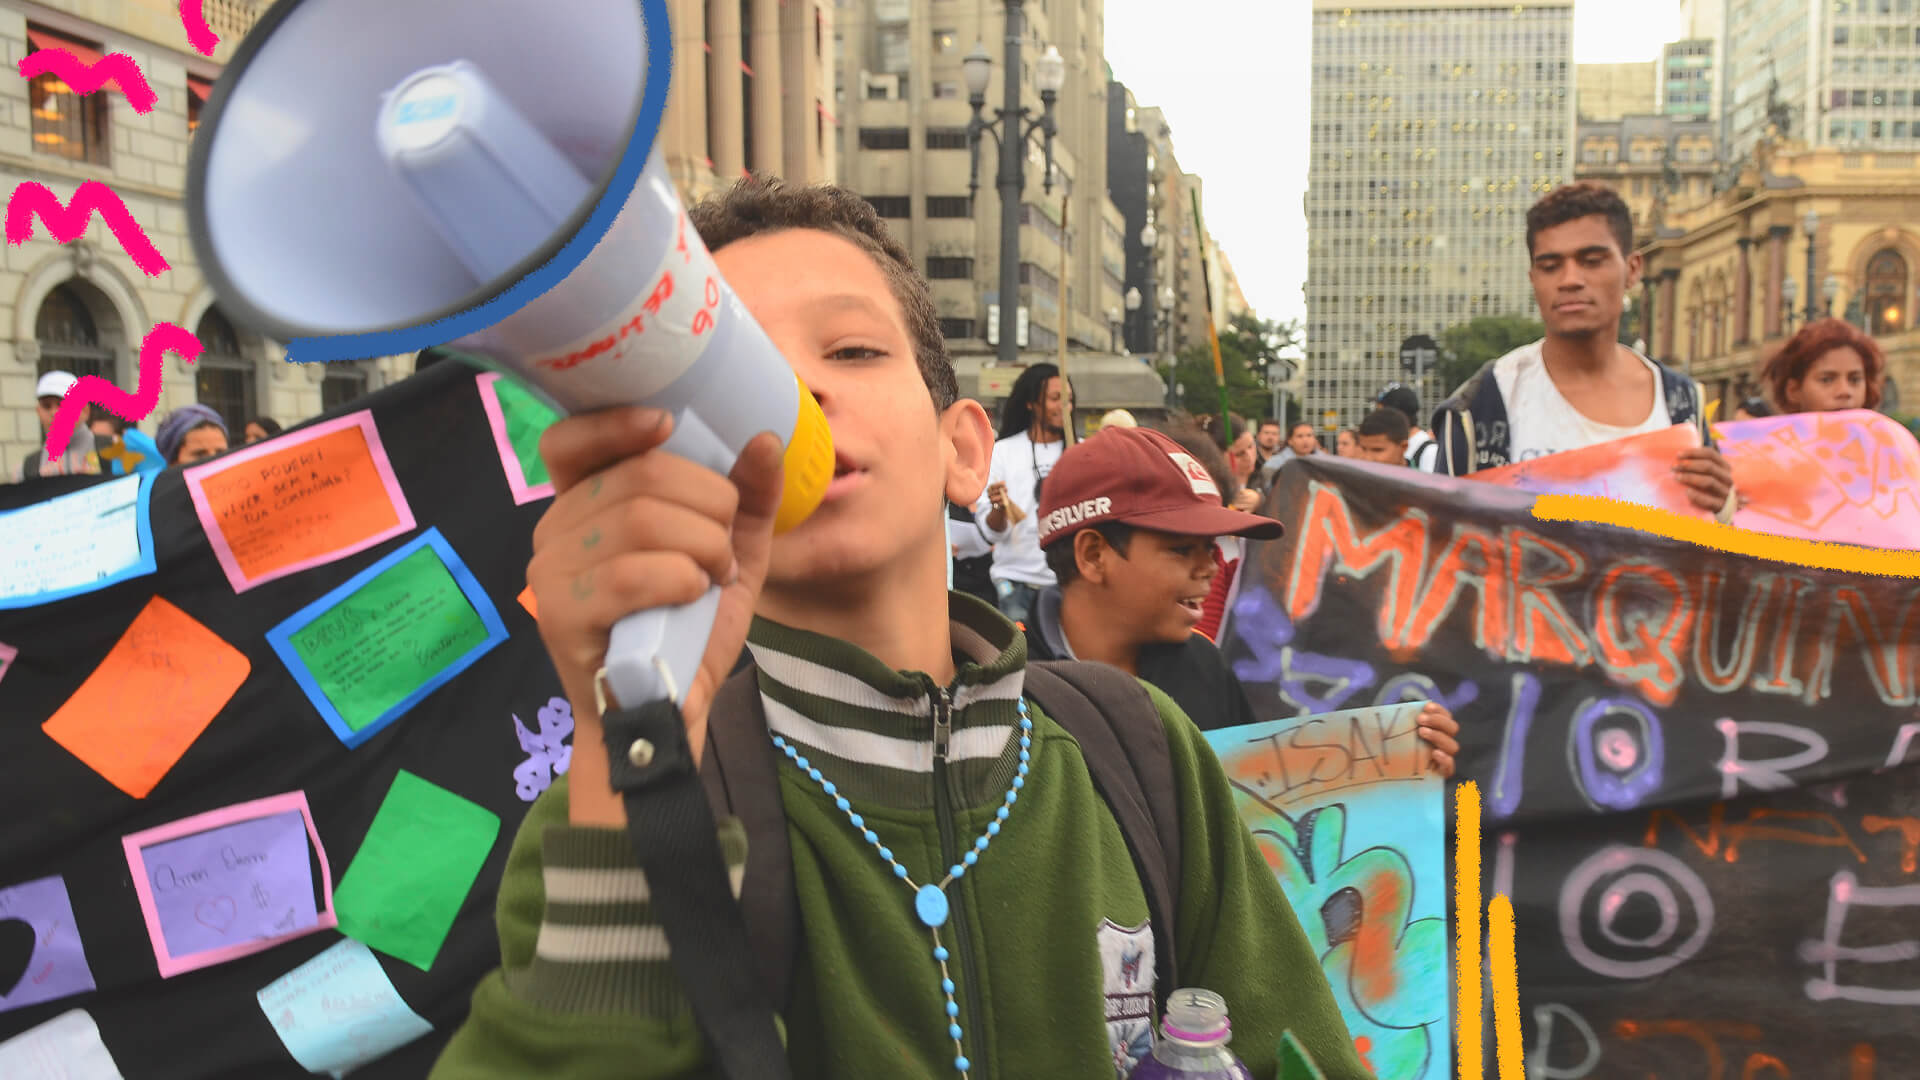 Na imagem, um menino de pele clara fala em um megafone. A imagem ilustra uma matéria sobre crianças em protestos.